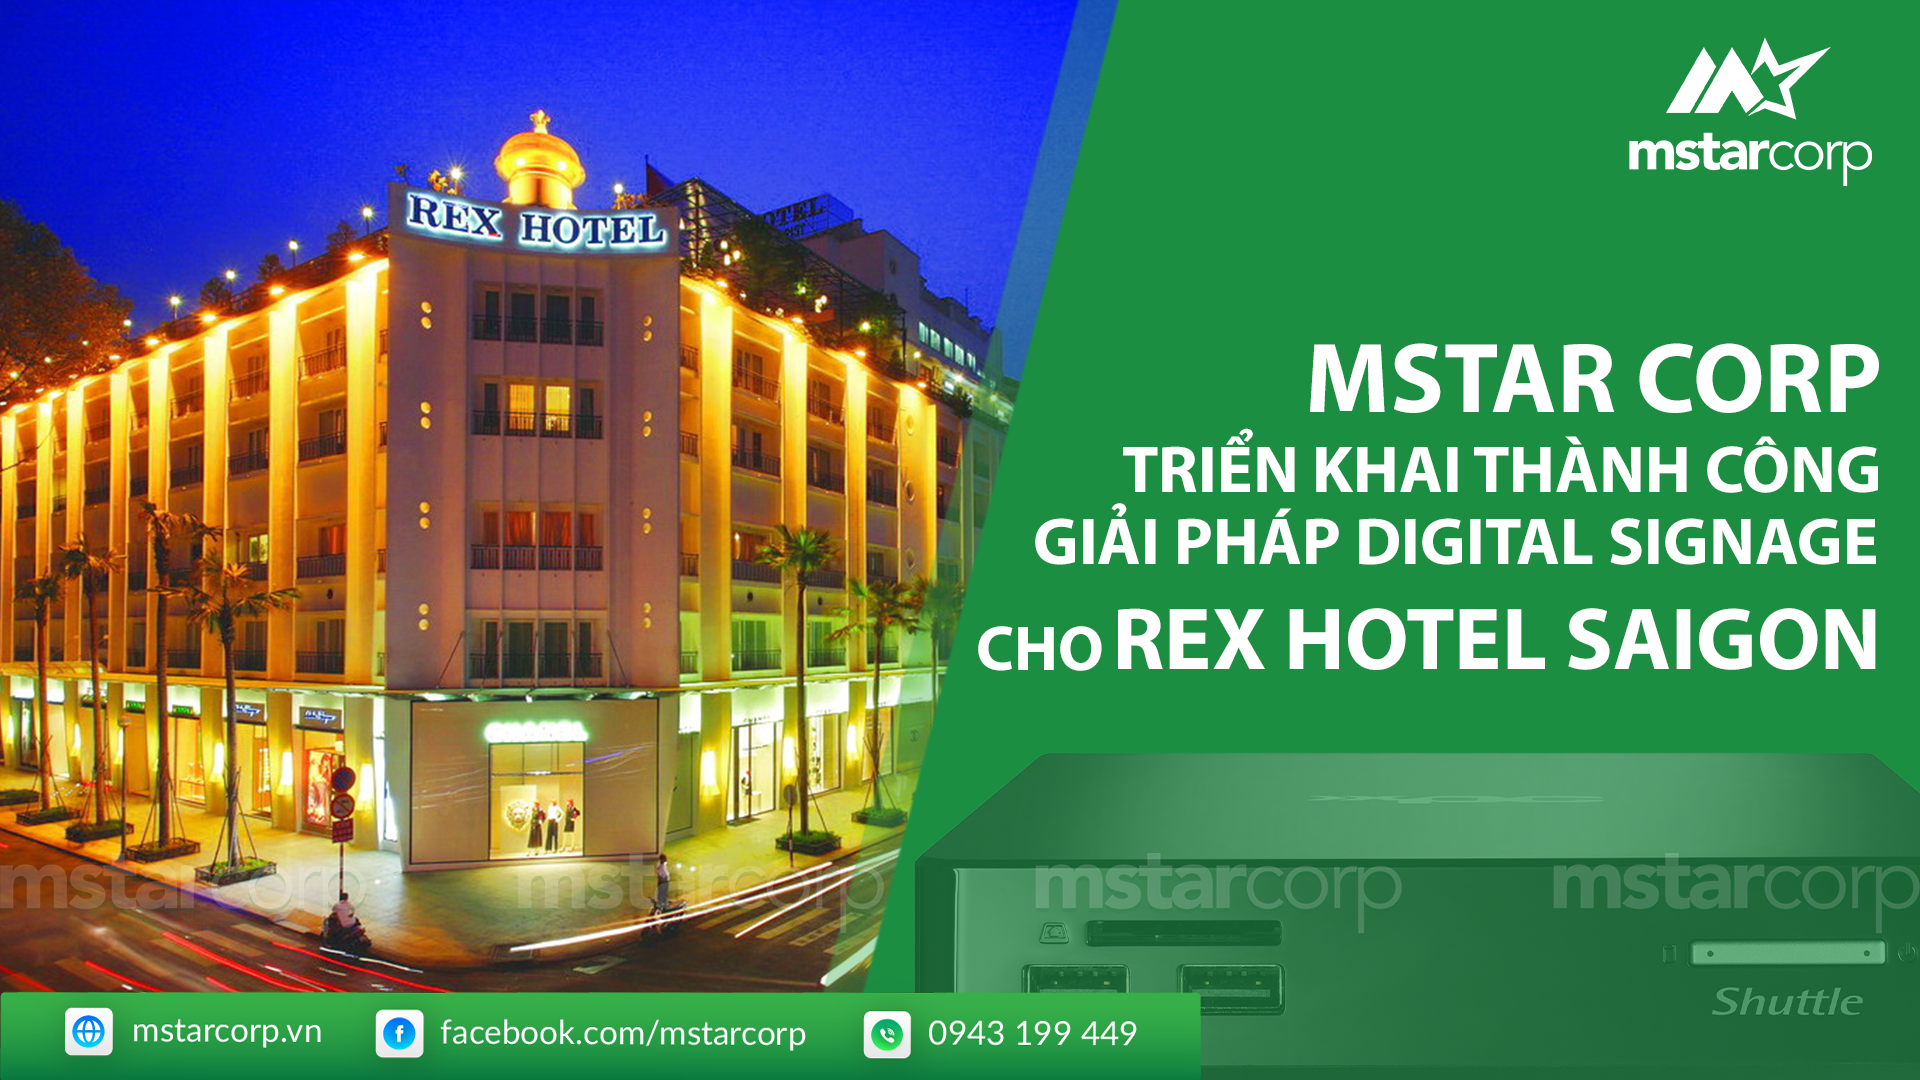 Mstar Corp triển khai thành công giải pháp Digital Signage cho Rex Hotel Saigon